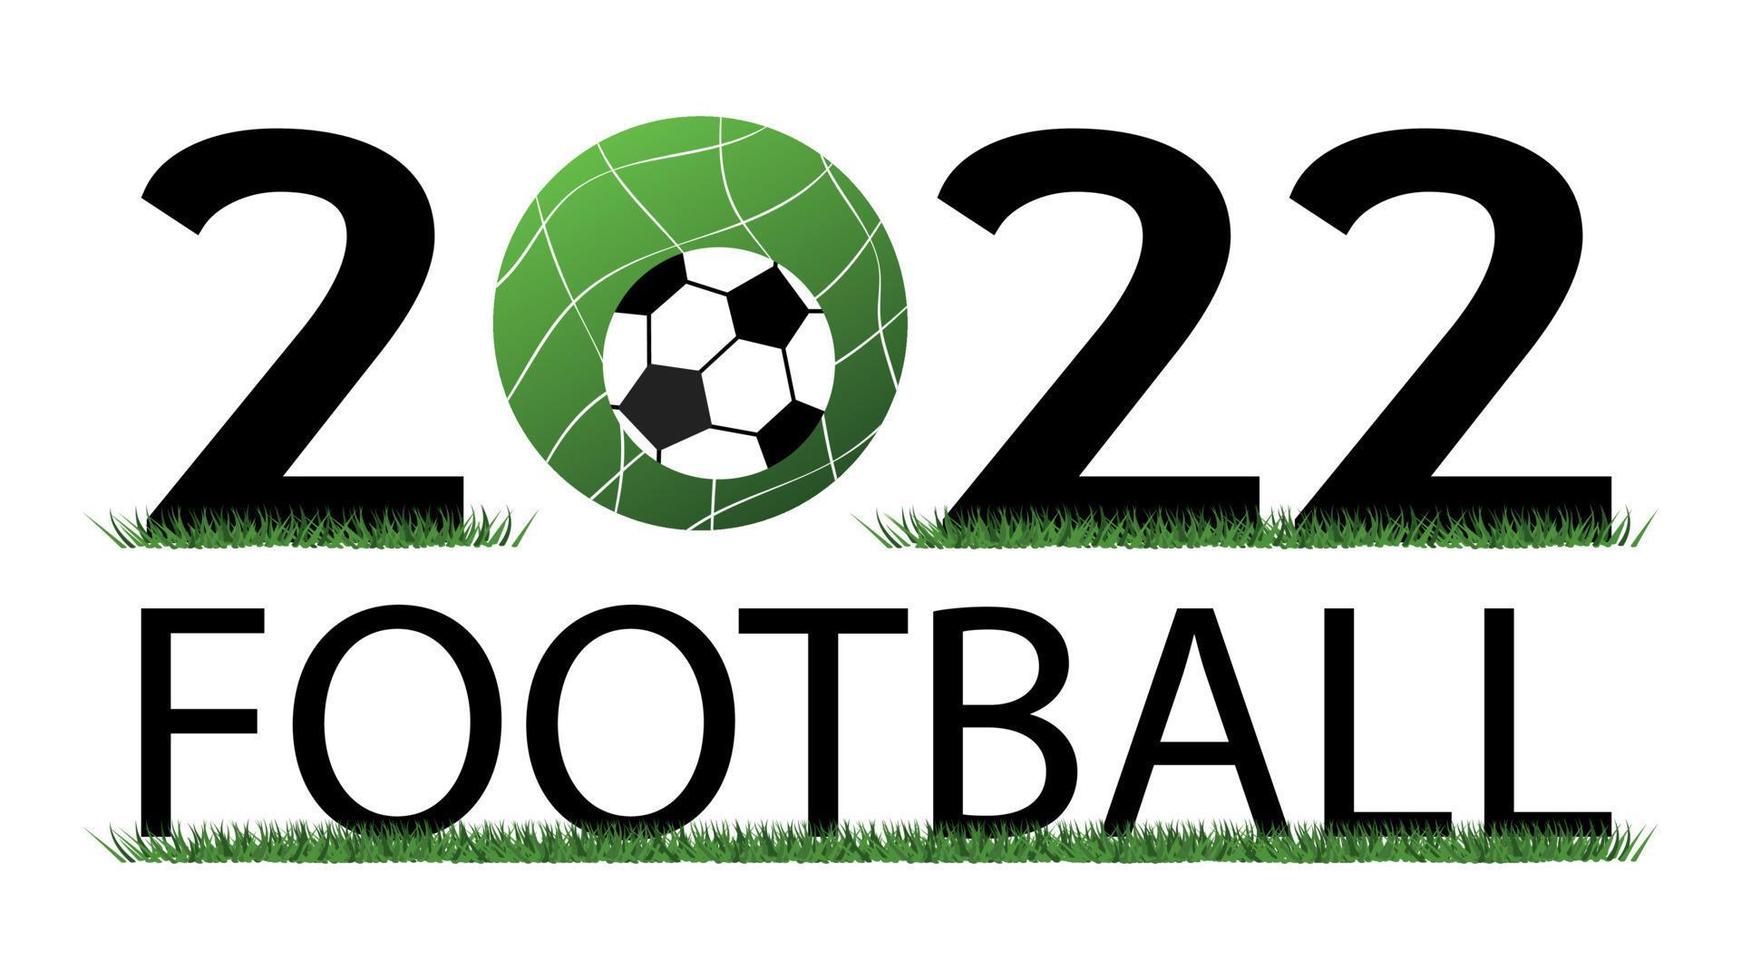 wereld Amerikaans voetbal kampioenschap 2022 vector illustratiemet voetbal bal